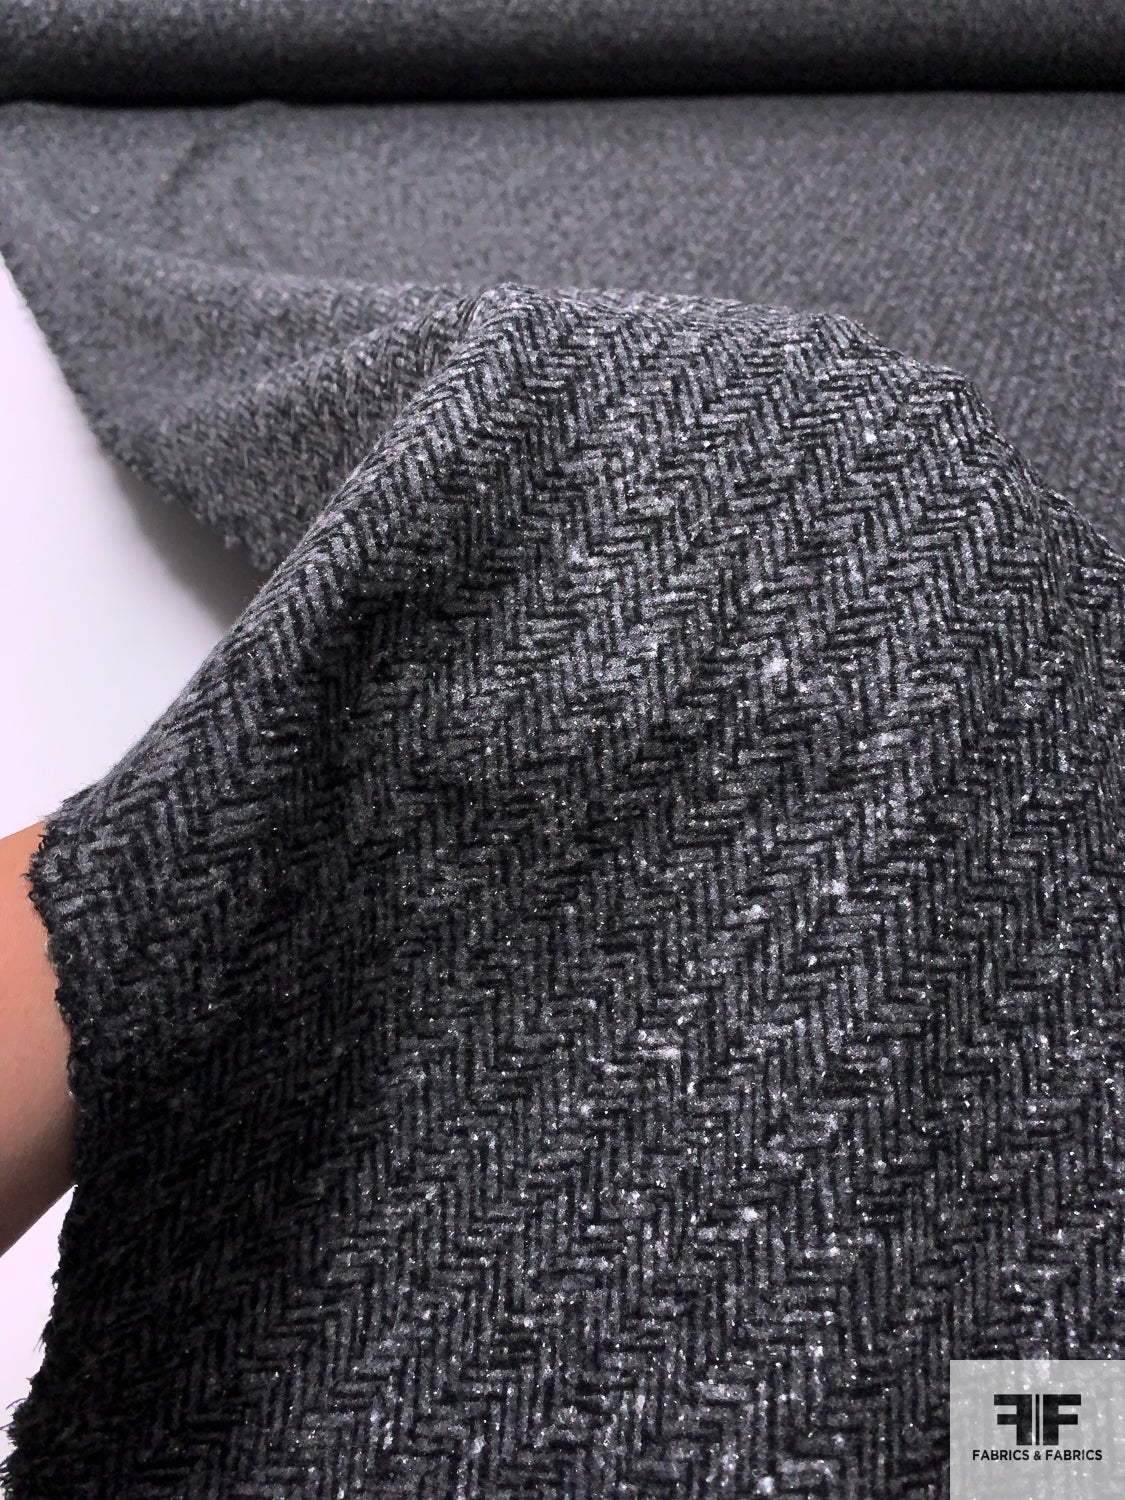 Italian Tweed-Look Woven Knit - Grey / Black